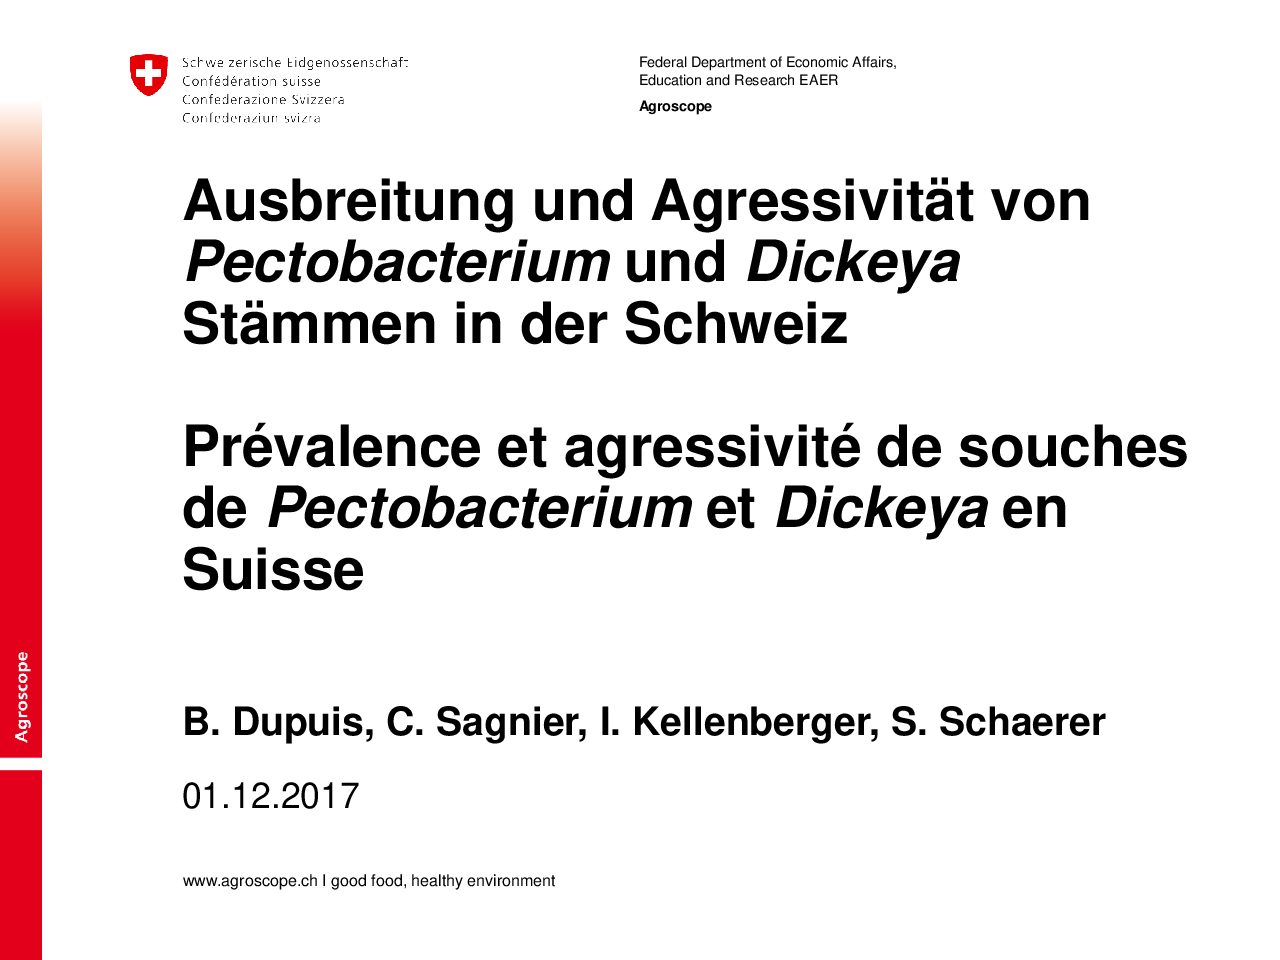 Ausbreitung und Agressivität von Pectobacterium und Dickeya Stämmenin der Schweiz (Agroscope)